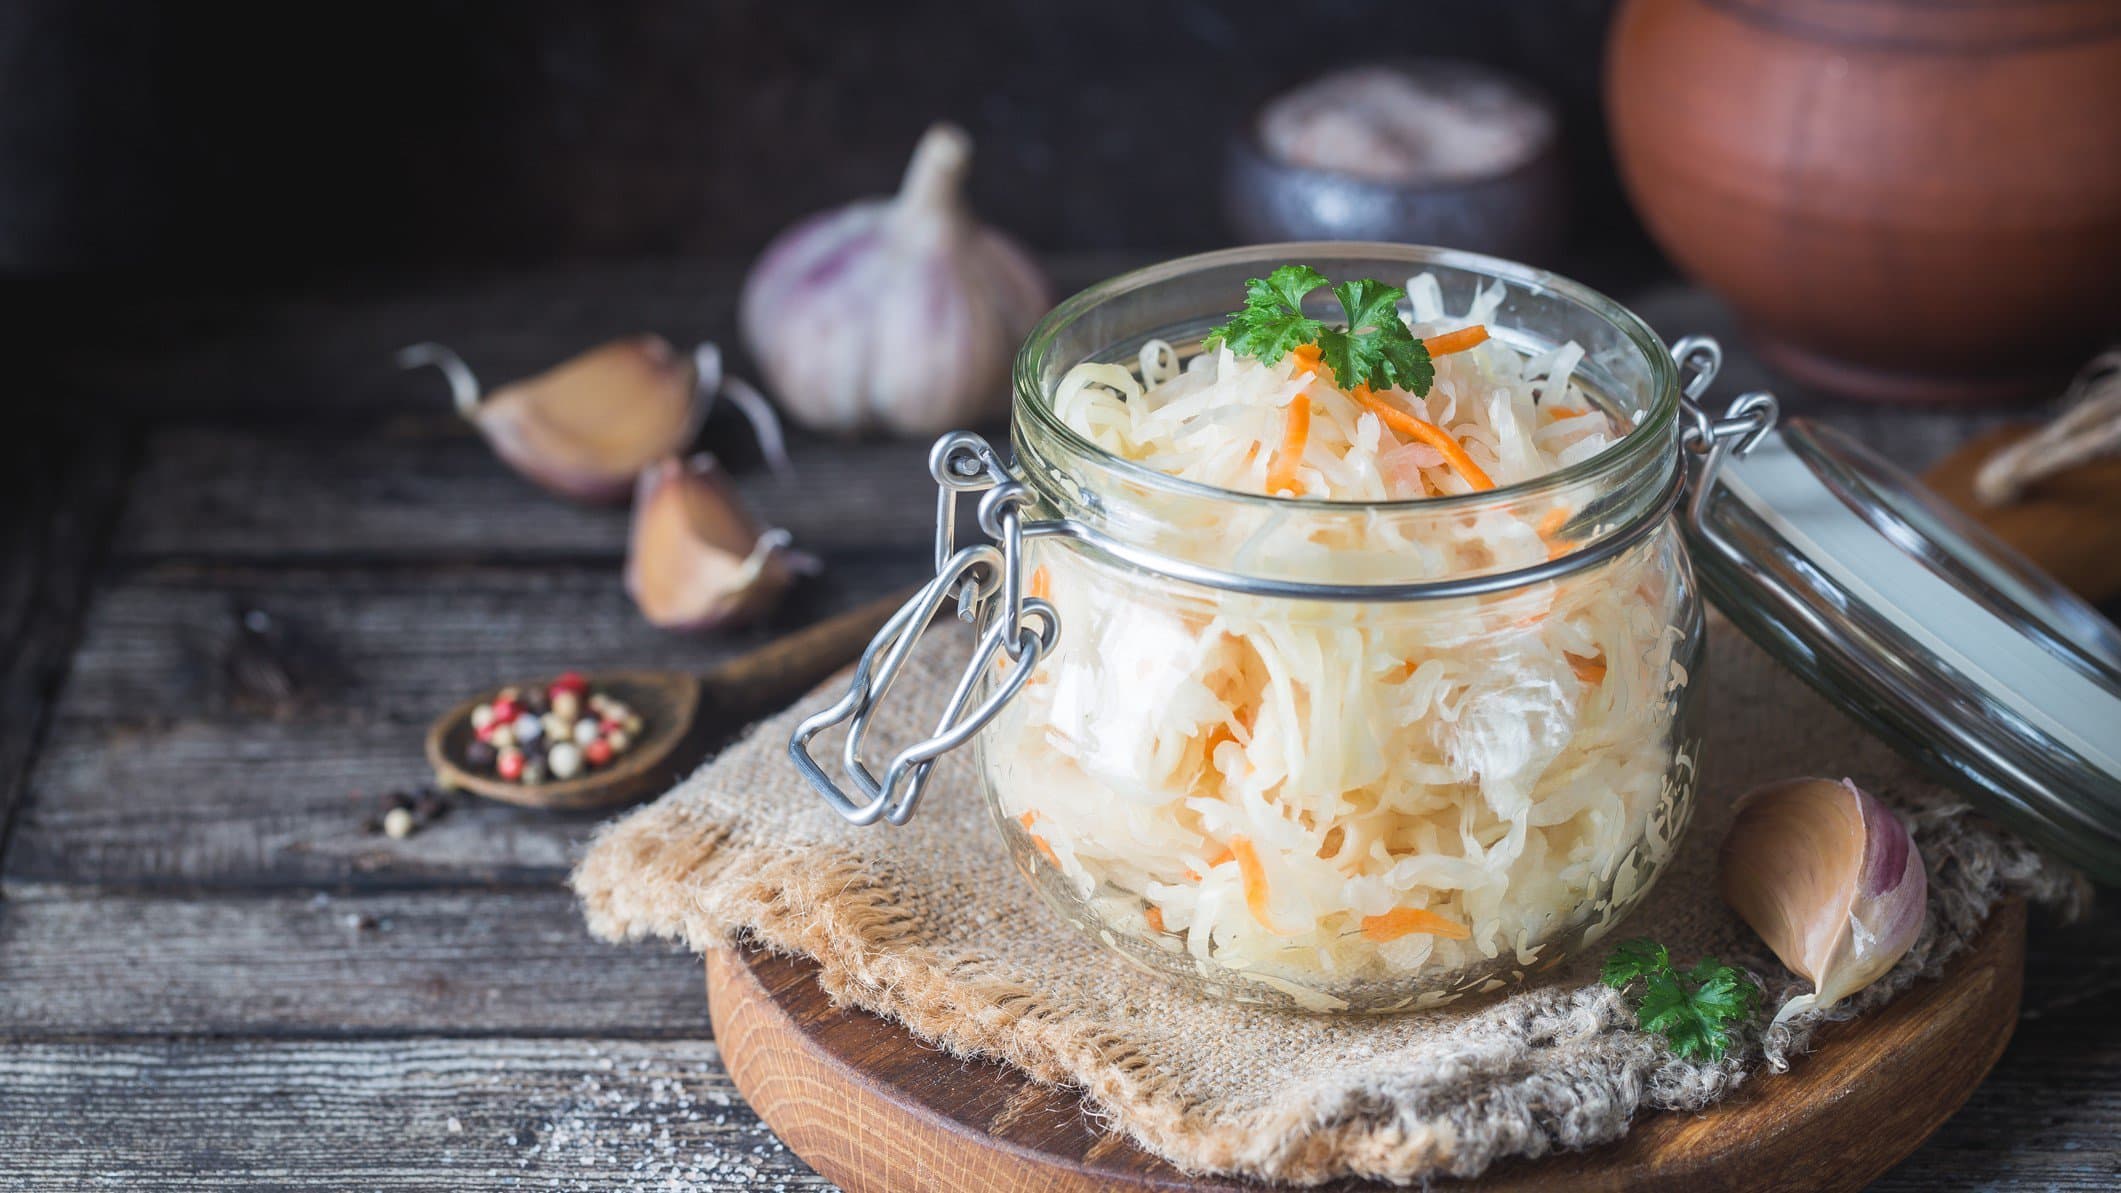 Ein Einmachglas mit Sauerkrautsalat mit Möhren, das auf einem runden Holzbrett steht. Drumherum sieht man Zutaten wie Knoblauch und Pfefferkörner.